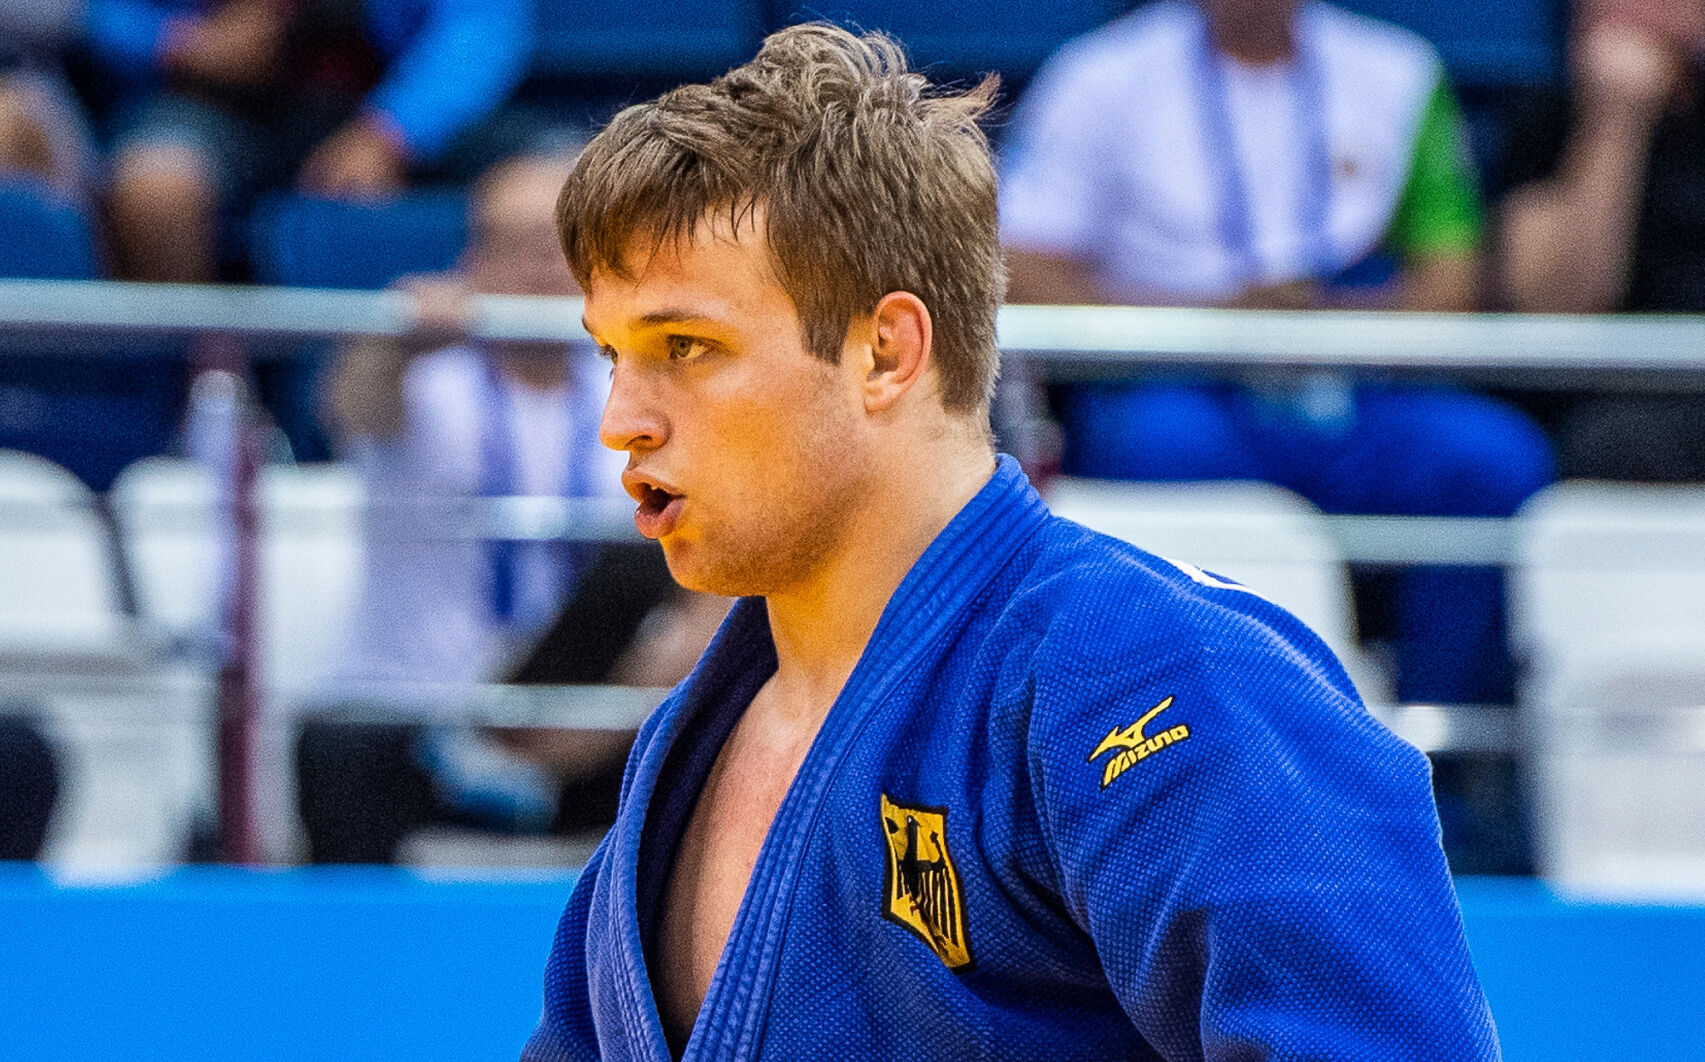 Timo Cavelius es el primer campeón de judo abiertamente gay de Alemania